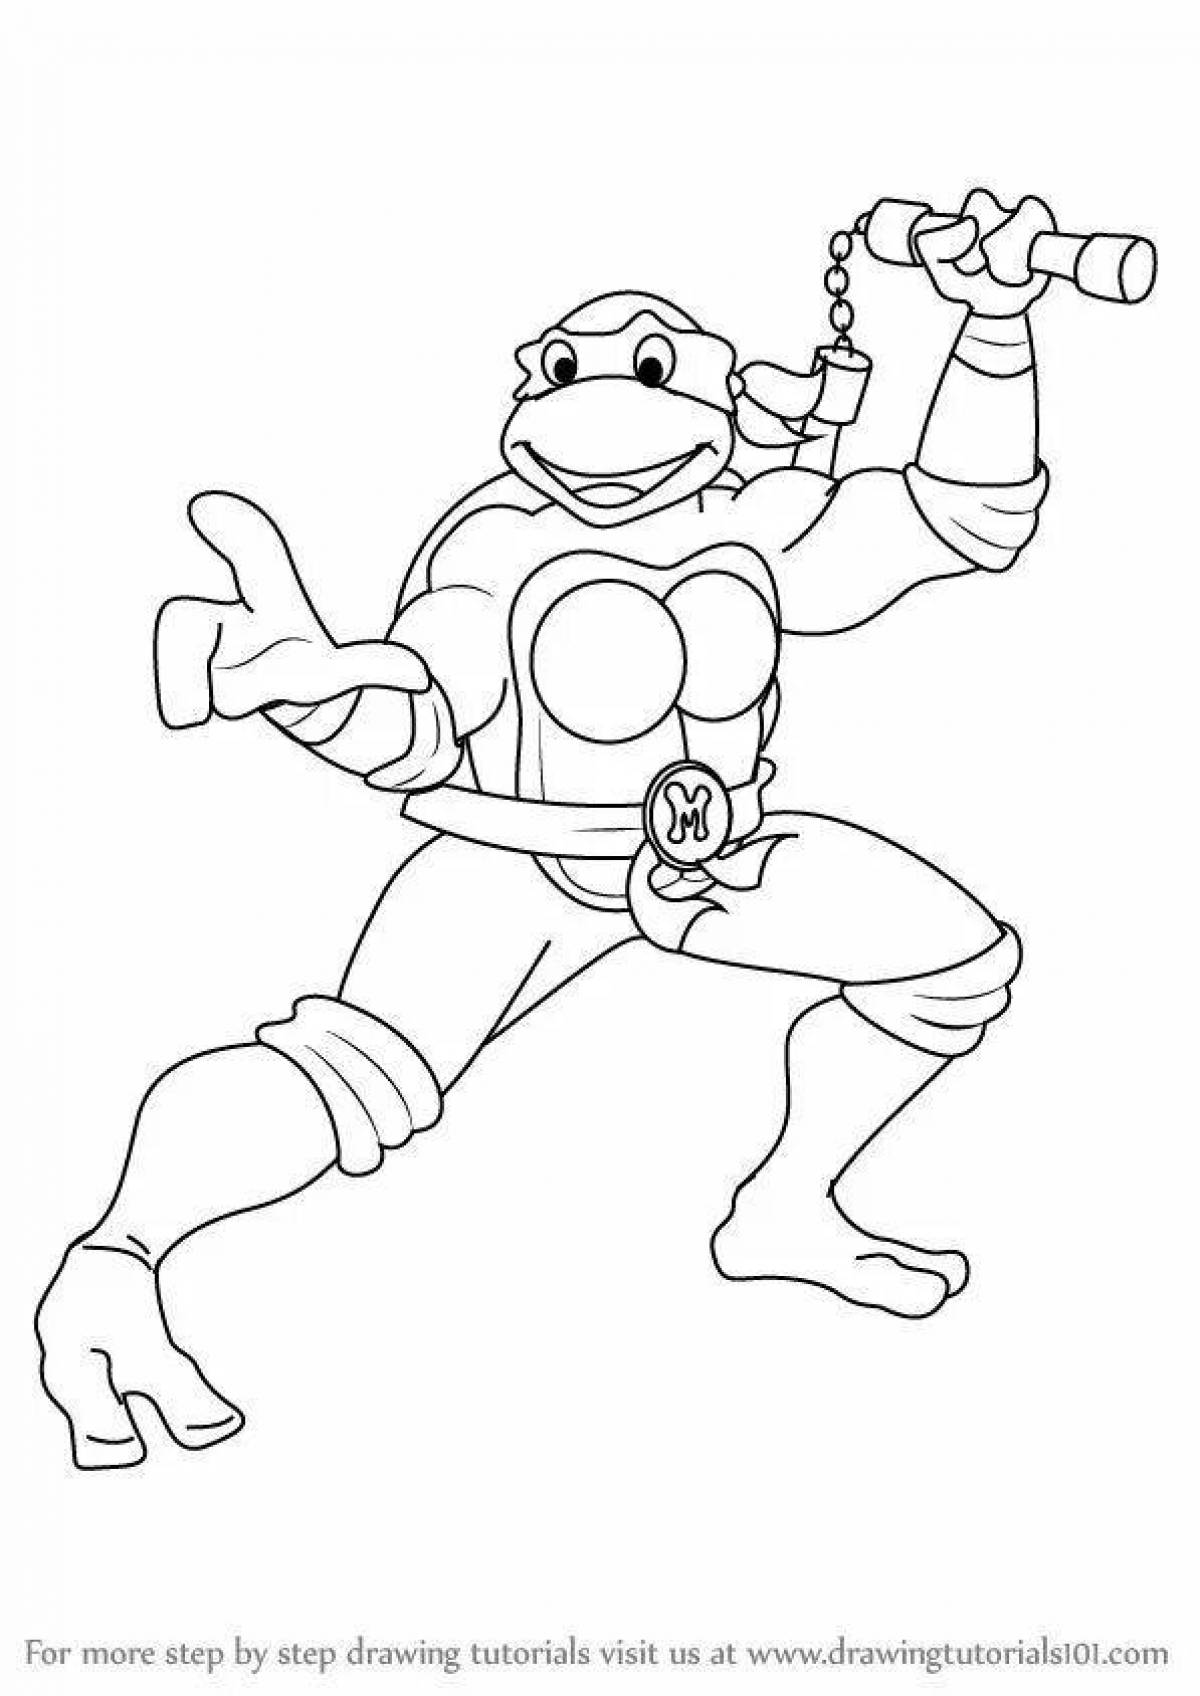 Live Michelangelo Teenage Mutant Ninja Turtles coloring book